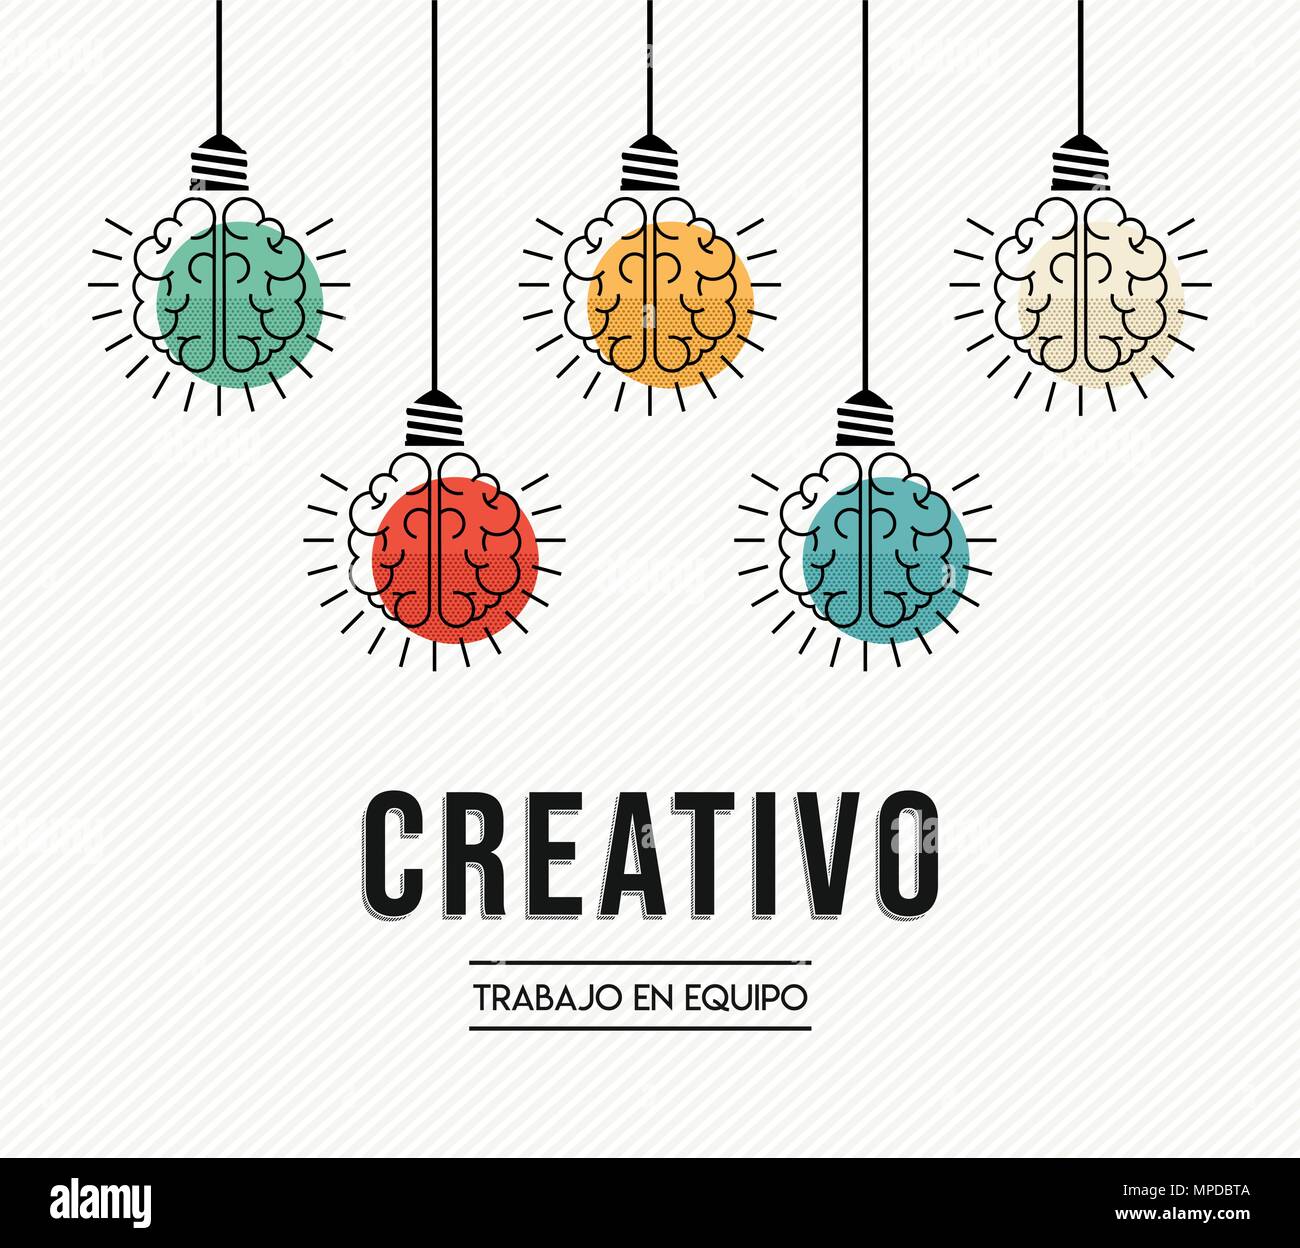 Le travail d'équipe créatif design moderne en espagnol avec le cerveau humain comme lampe lumière colorée, la créativité d'entreprise concept. Vecteur EPS10. Illustration de Vecteur